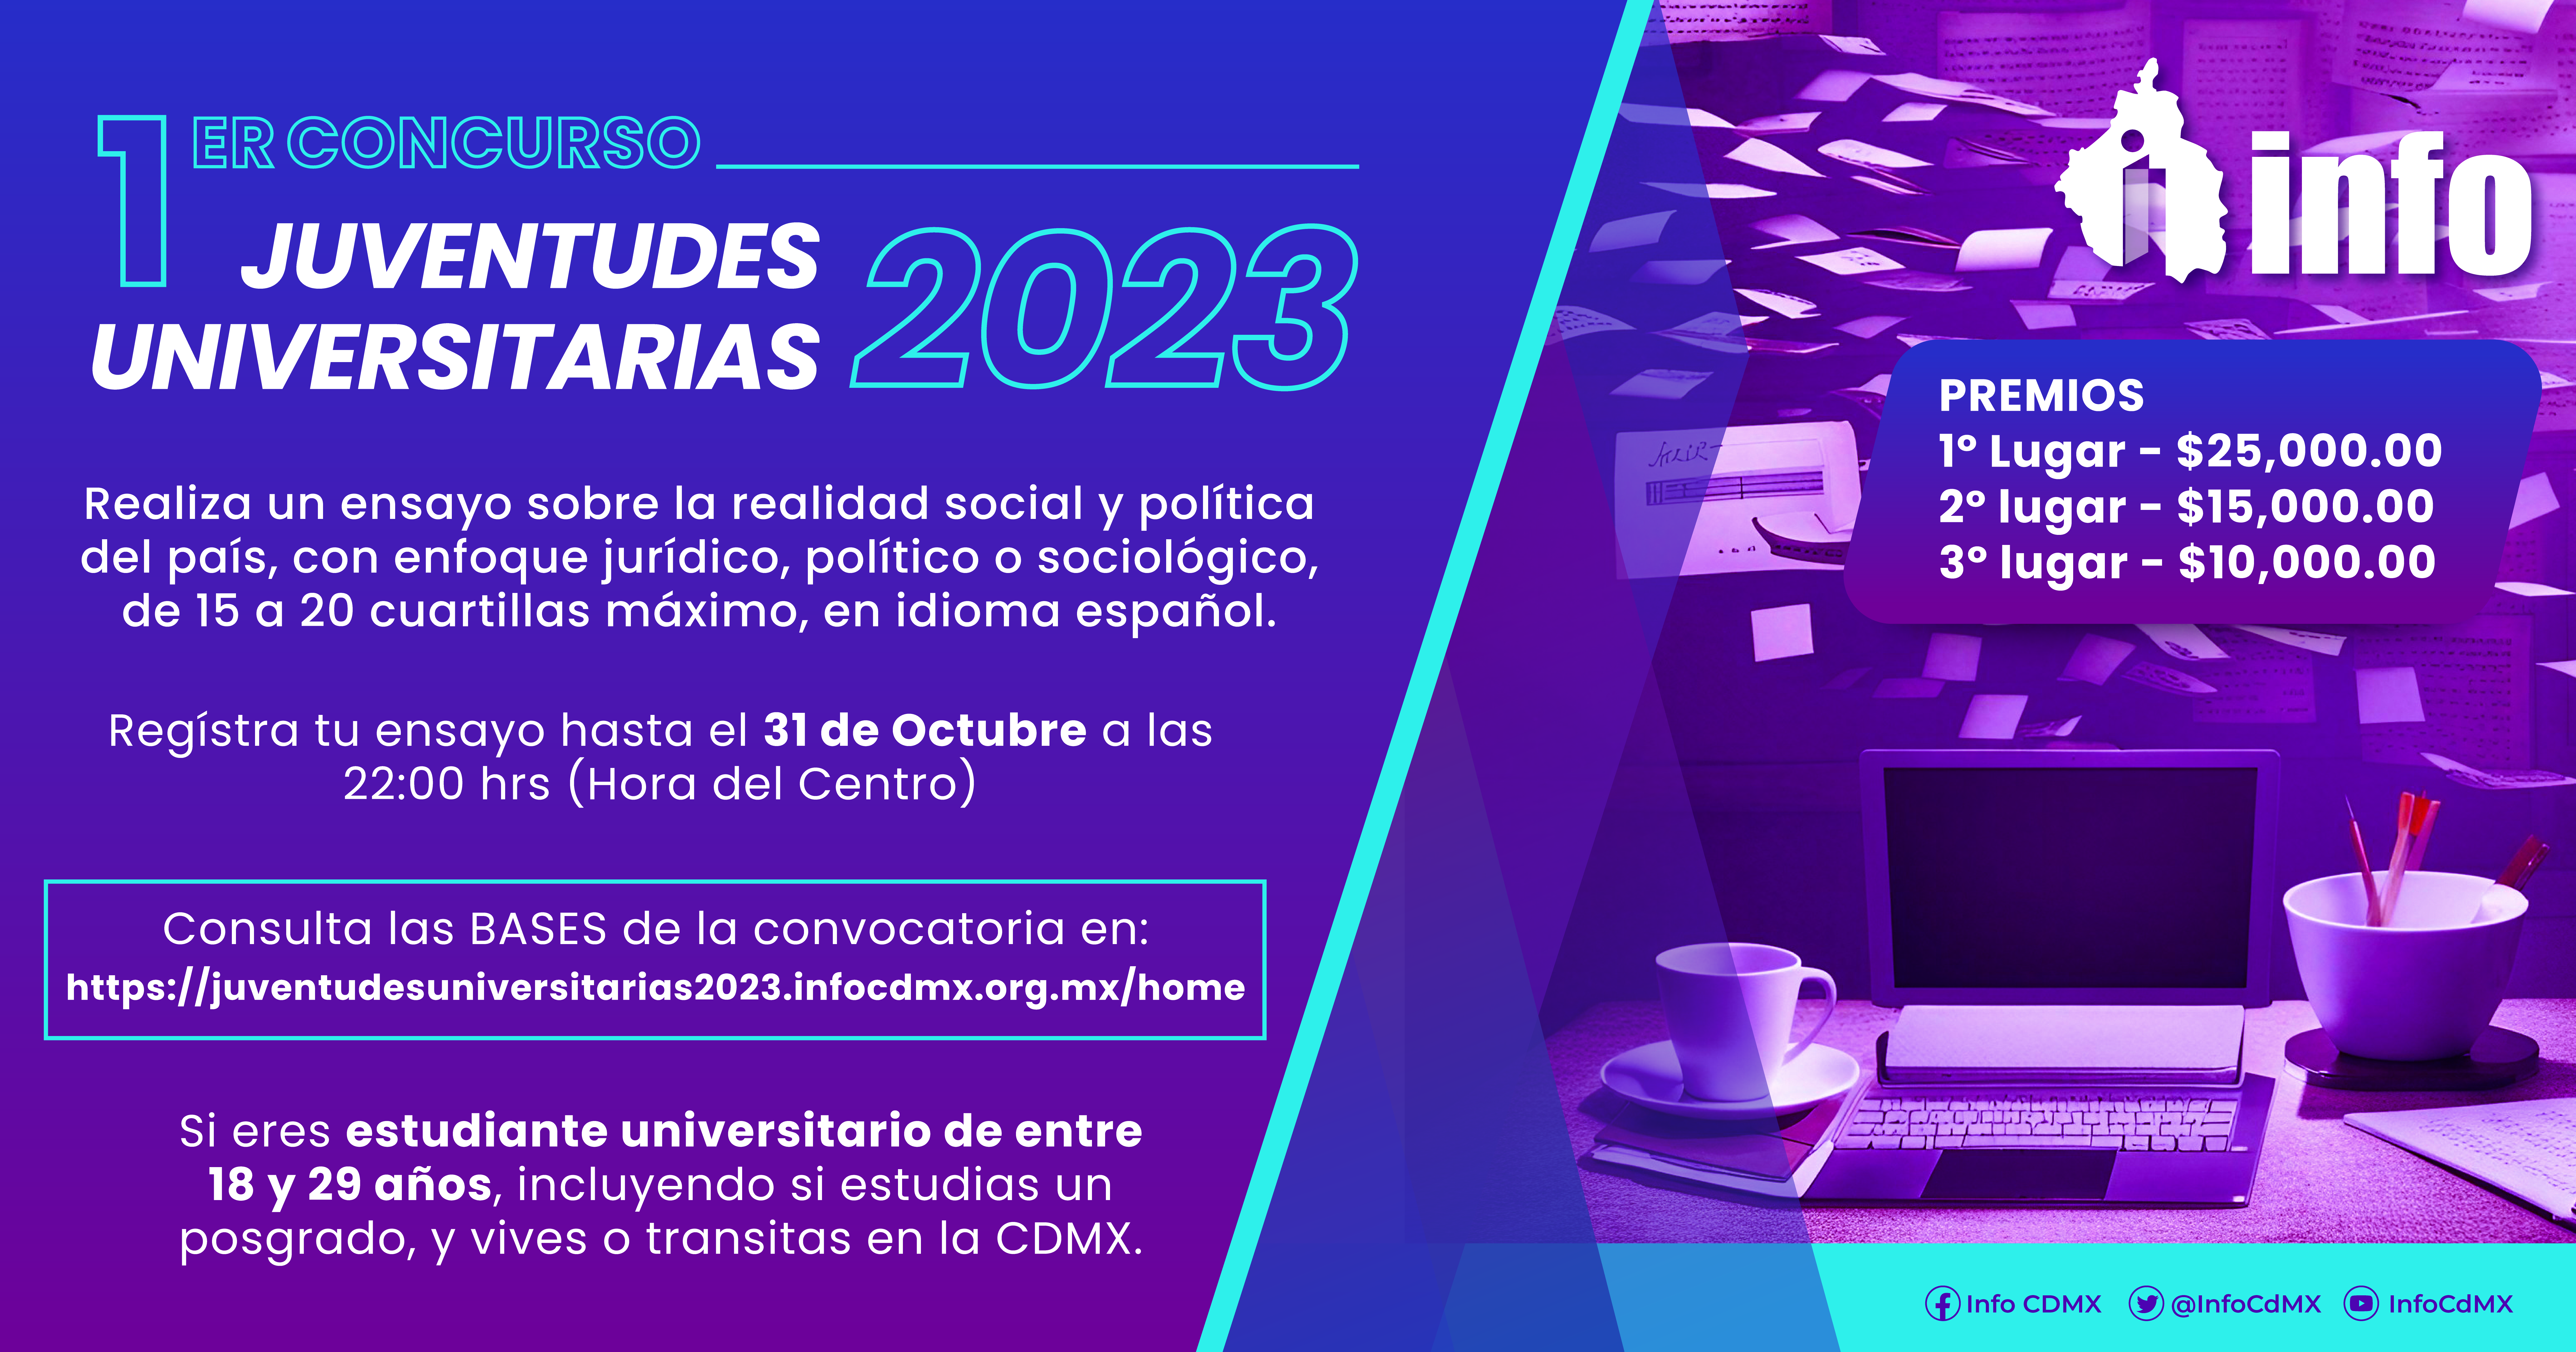 El Instituto de Transparencia, Acceso a la Información Pública, Protección de Datos Personales y Rendición de Cuentas de la Ciudad de México (INFO CDMX) convoca al Primer Concurso “Juventudes Universitarias 2023”.